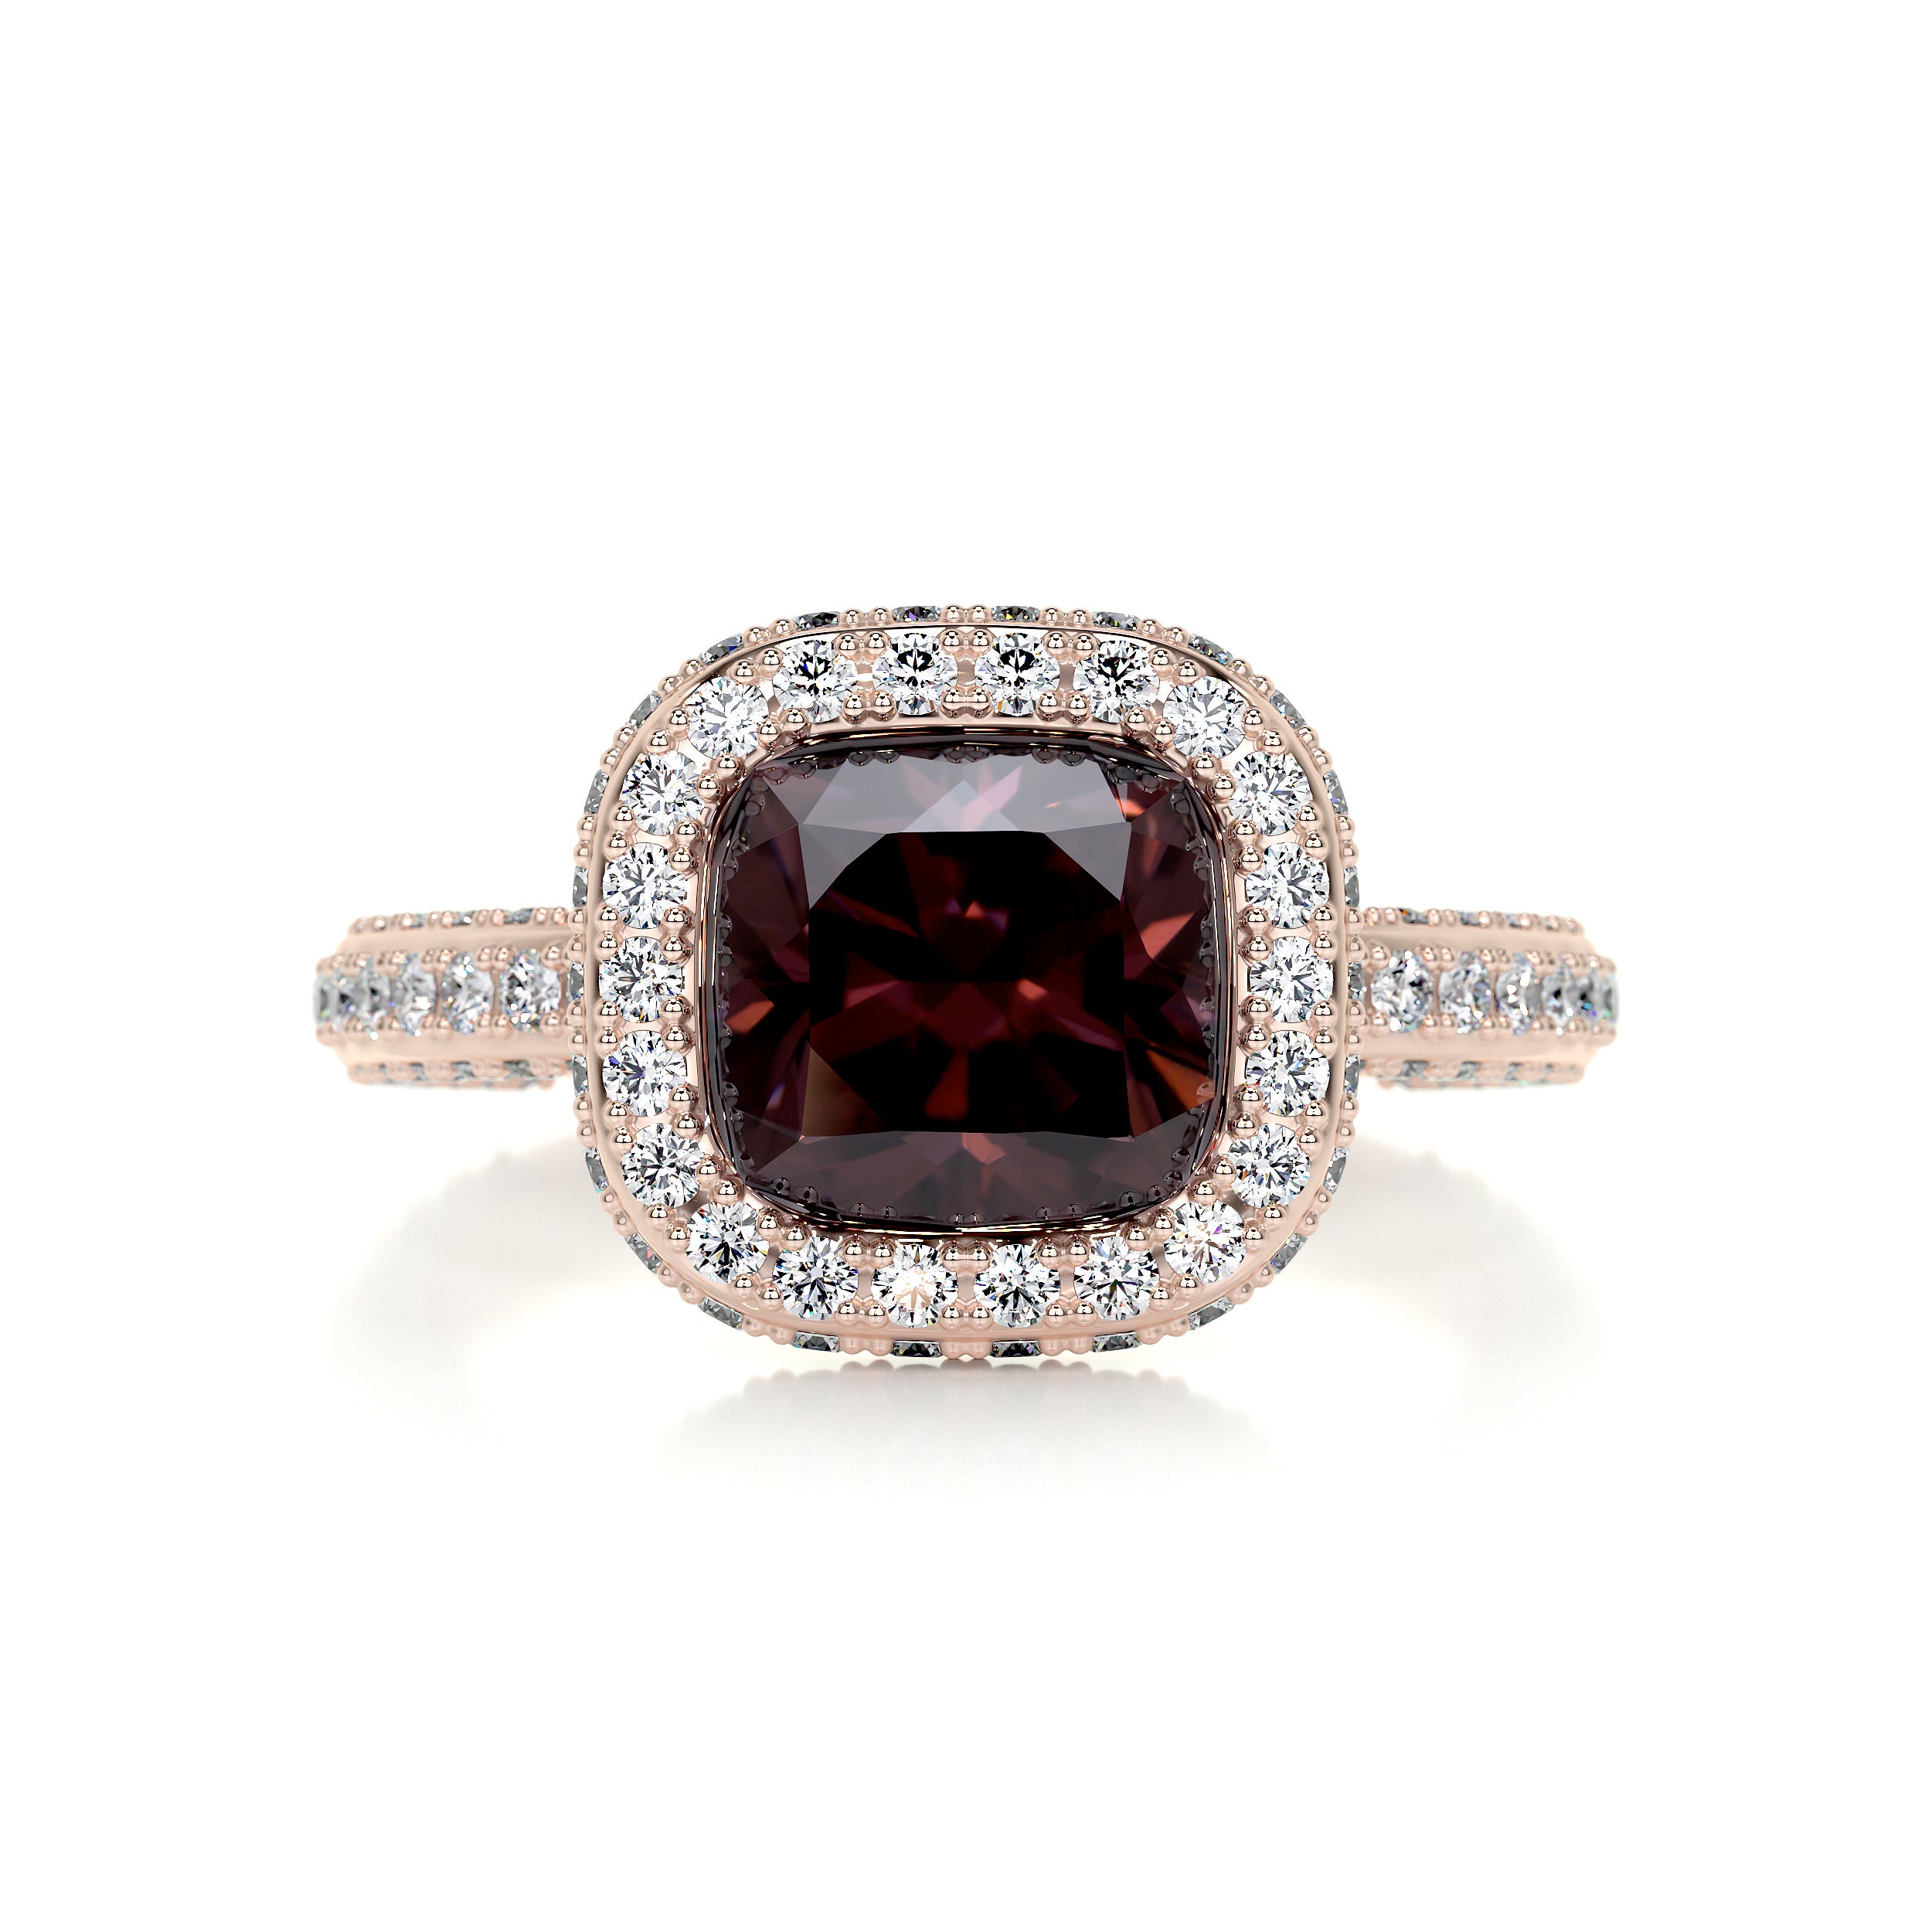 Kim Gemstone & Diamonds Ring   (4 Carat) -14K Rose Gold